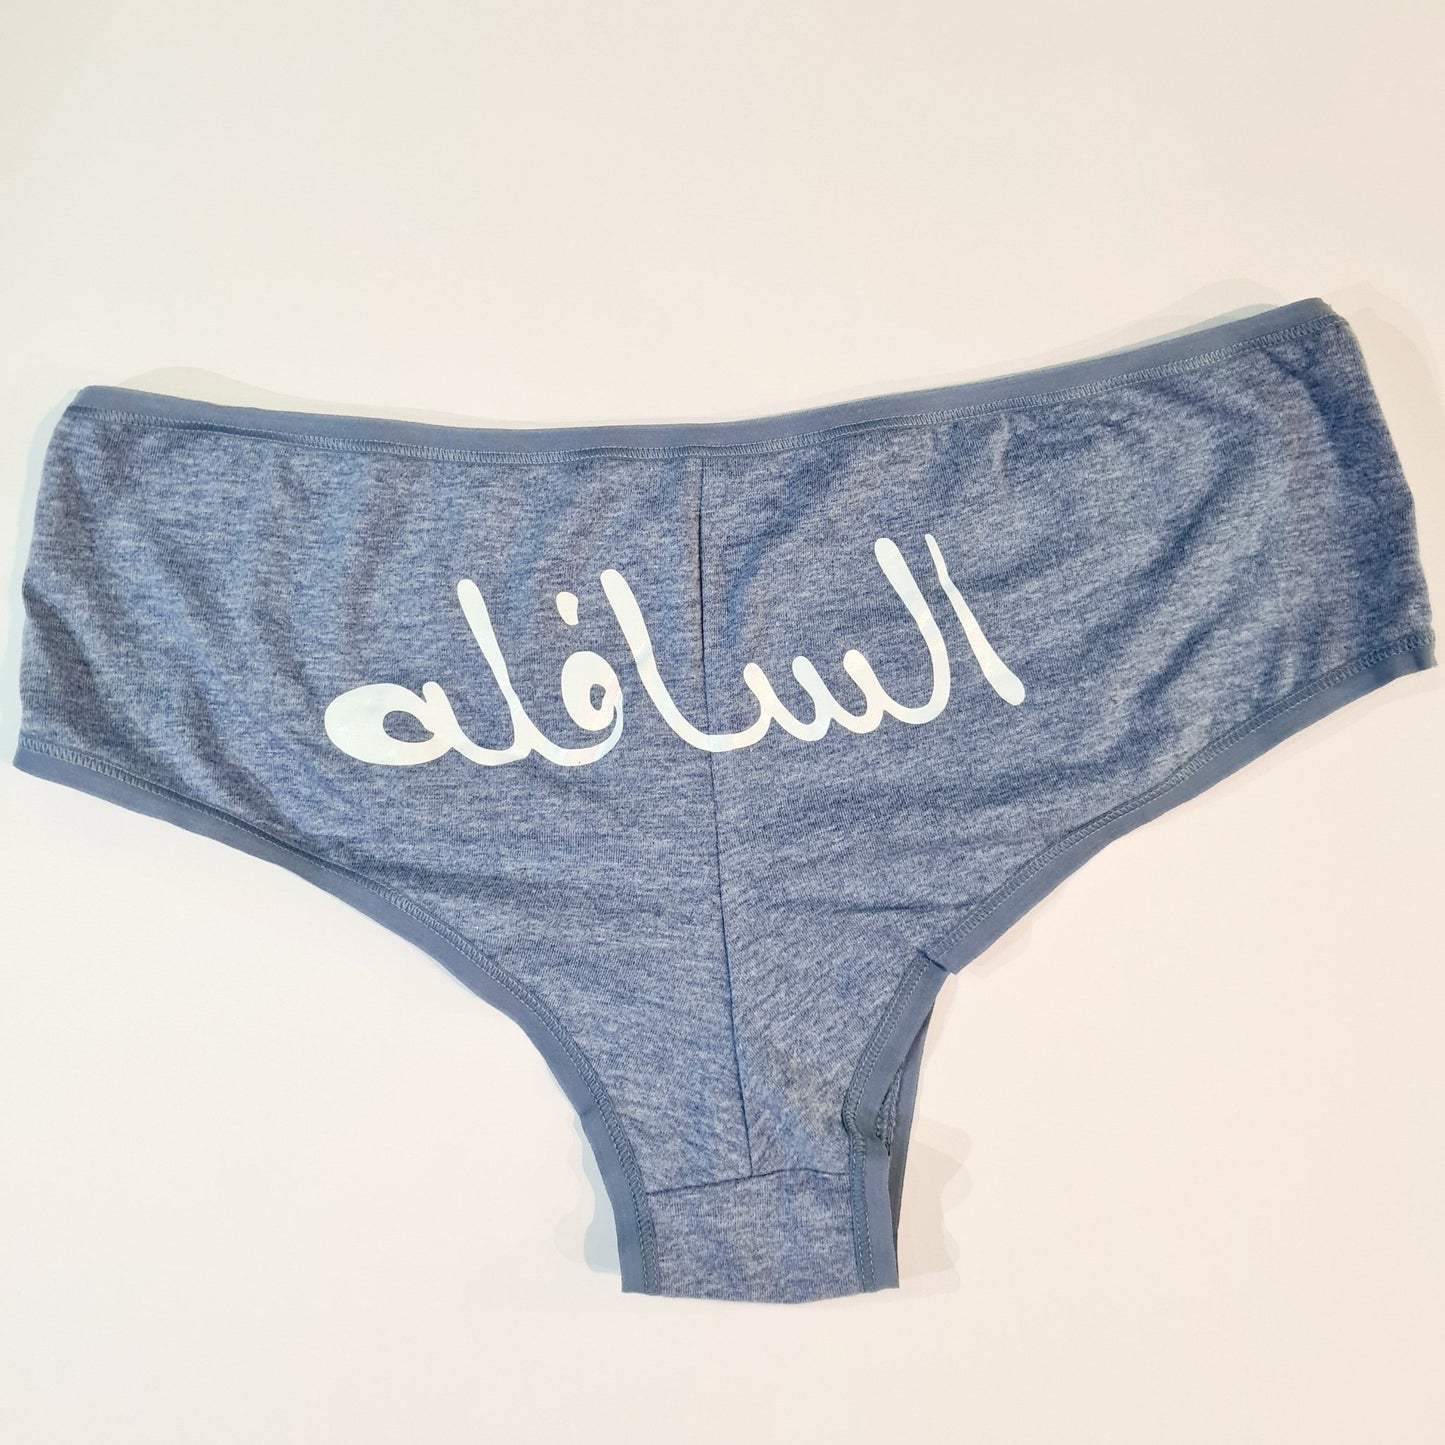 Women underwear - El Safla - Etba3lly